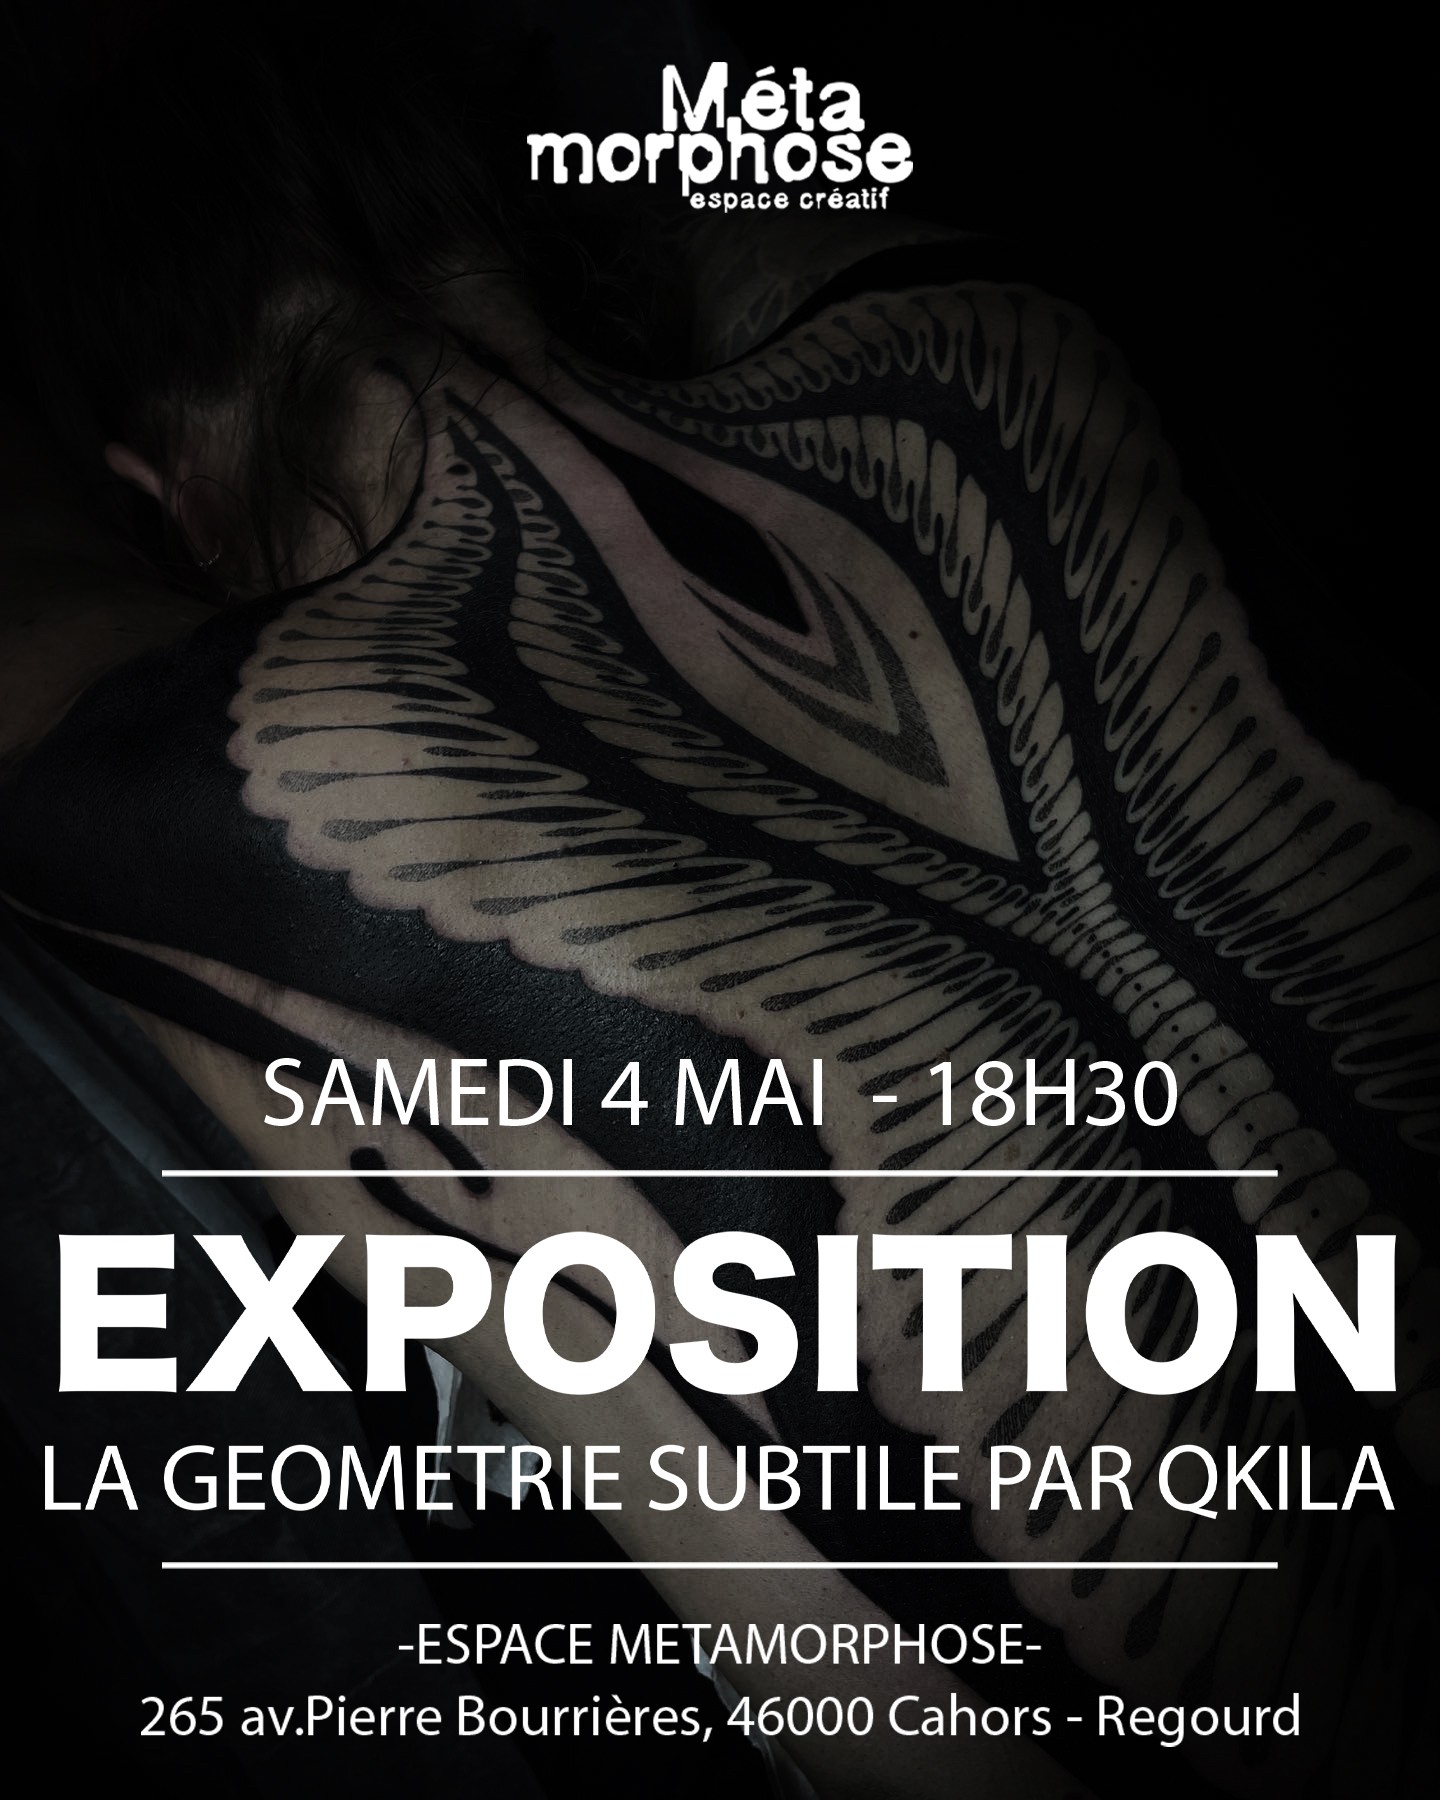 Exposition "La Géométrie subtile par Qkila" null France null null null null